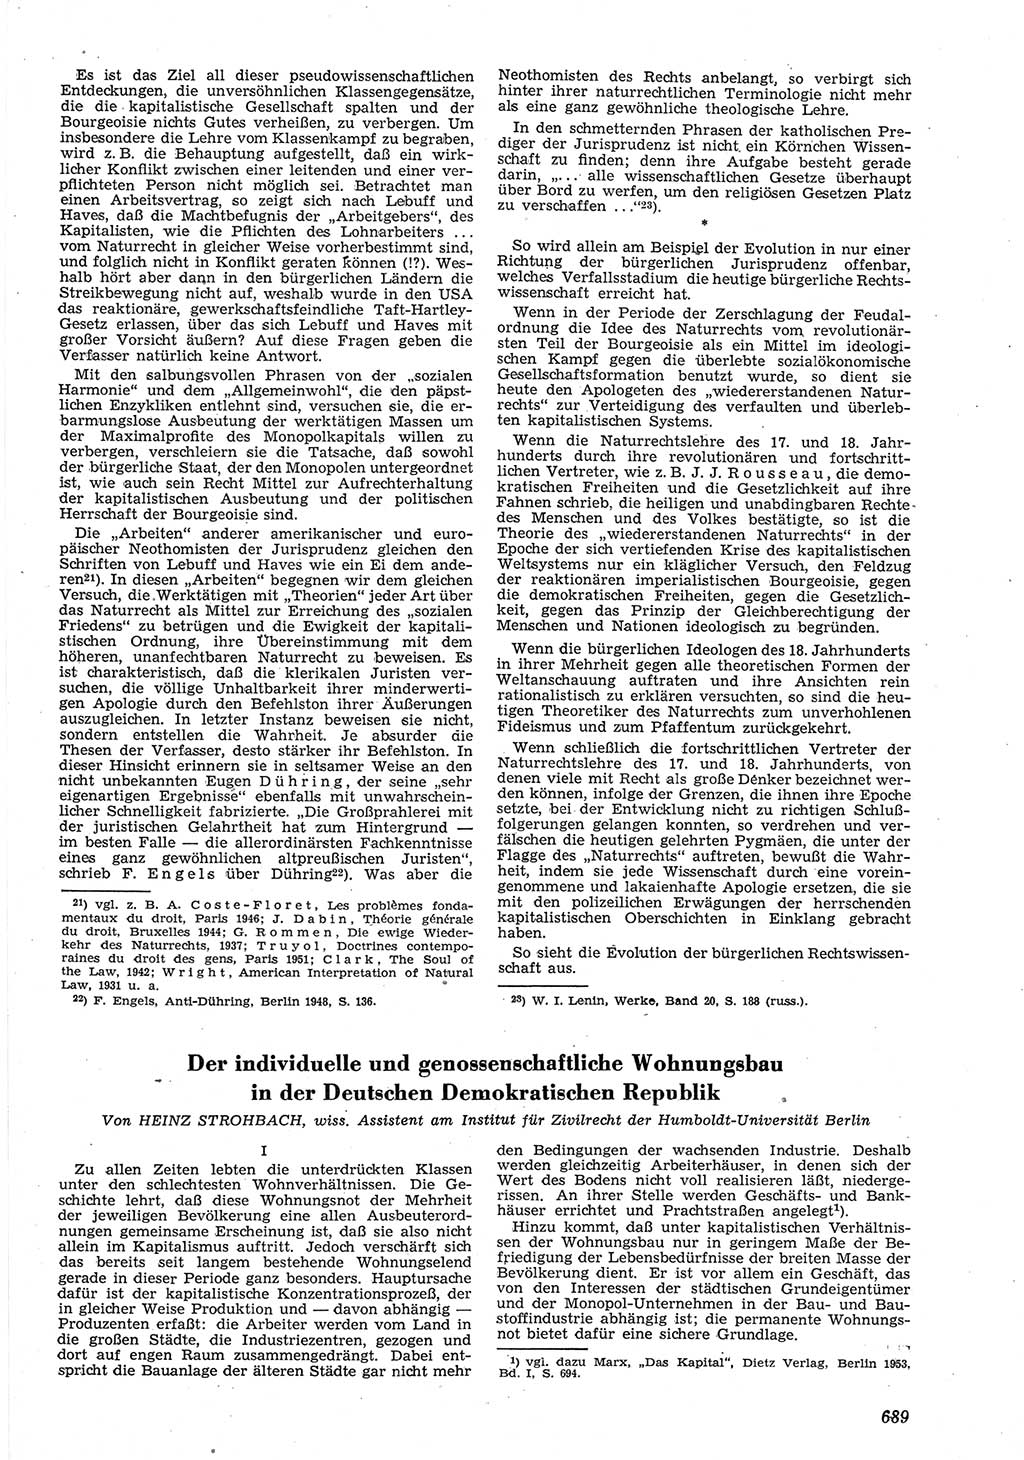 Neue Justiz (NJ), Zeitschrift für Recht und Rechtswissenschaft [Deutsche Demokratische Republik (DDR)], 8. Jahrgang 1954, Seite 689 (NJ DDR 1954, S. 689)